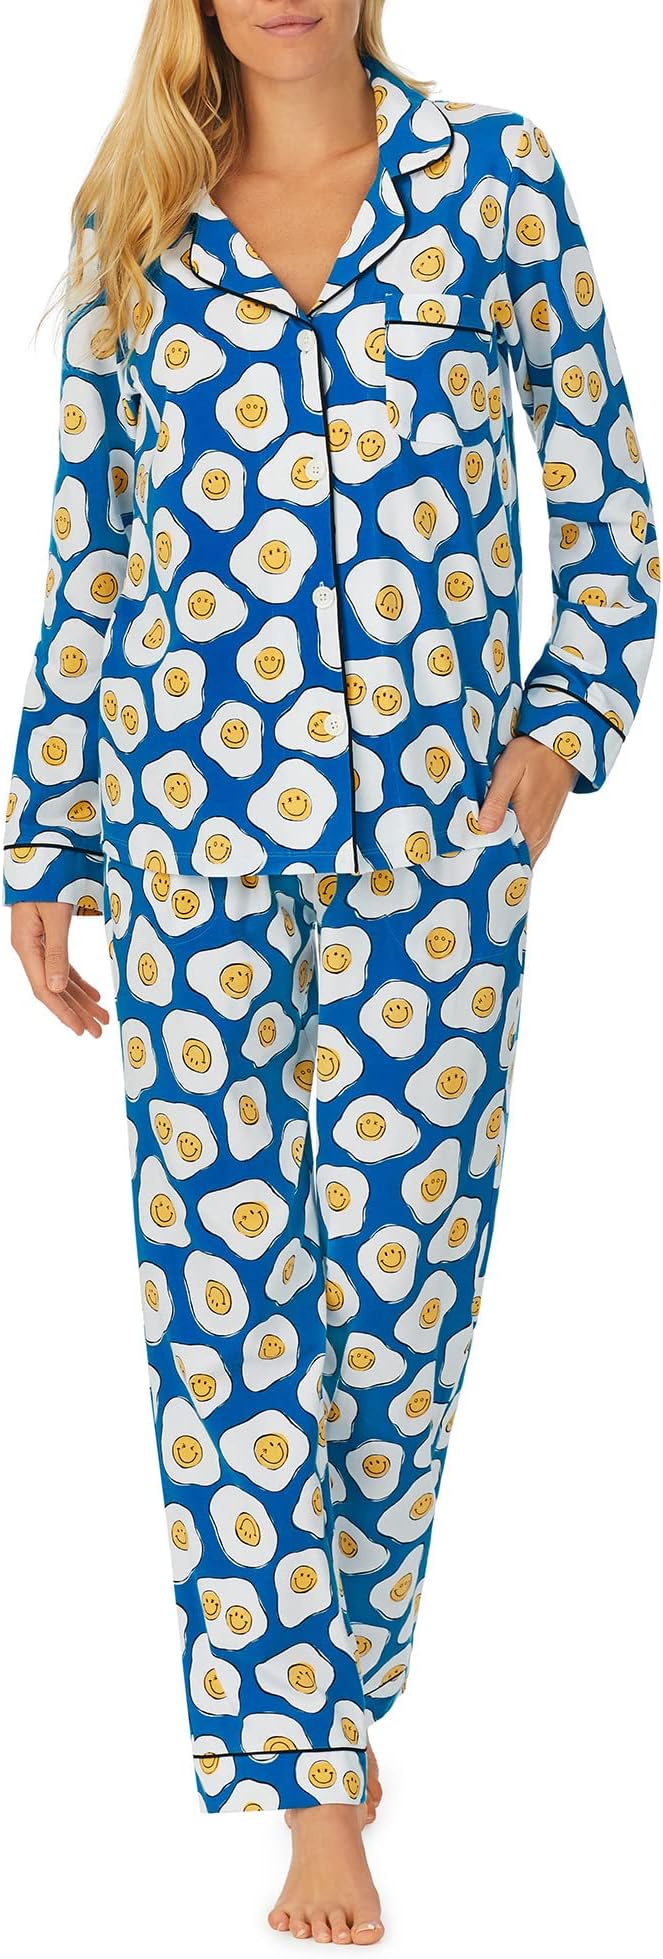 Zappos Print Lab: классический пижамный комплект с длинными рукавами Sunny Side Up Bedhead PJs, цвет Sunny Side Up smale holly sunny side up